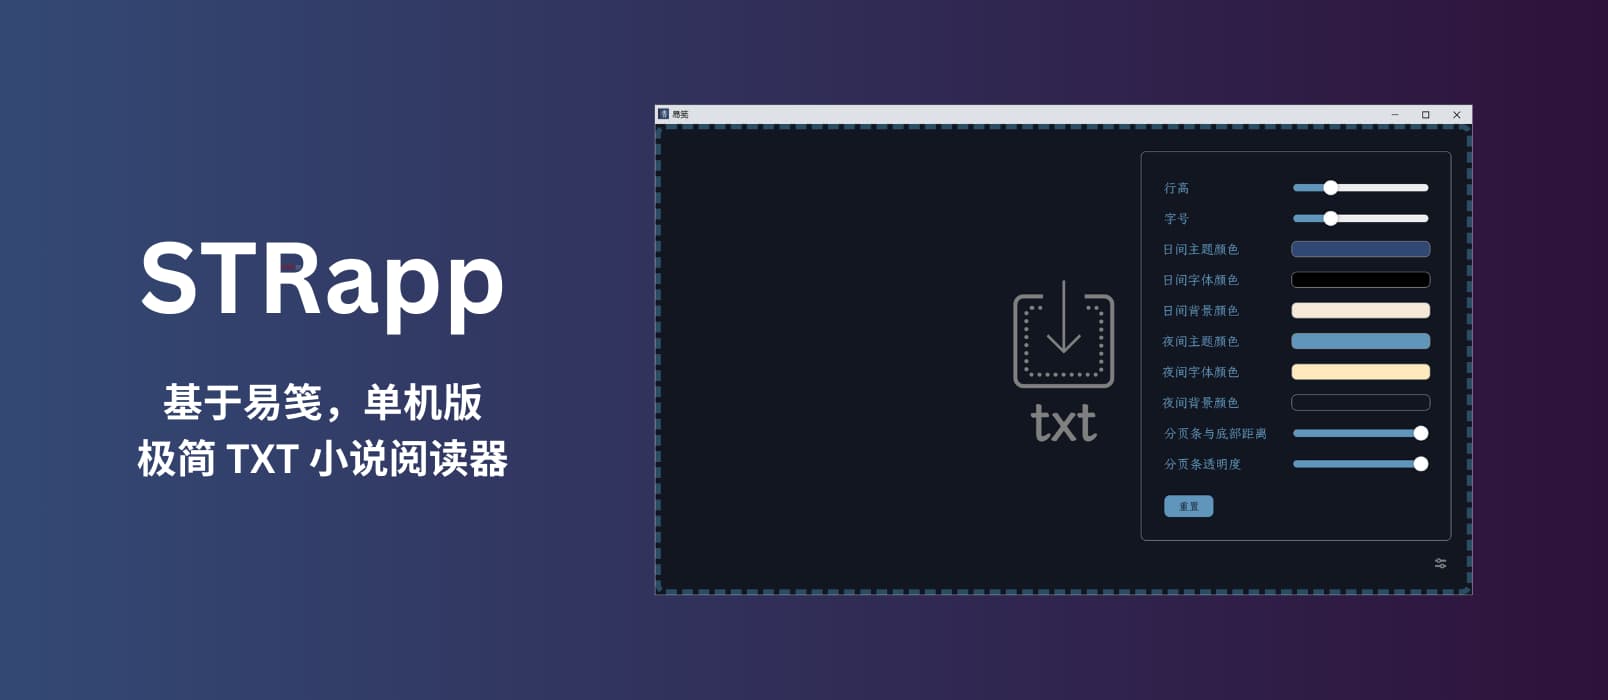 STRapp - 单机版极简 TXT 小说阅读器｜基于易笺（SimpleTextReader）[Windows]